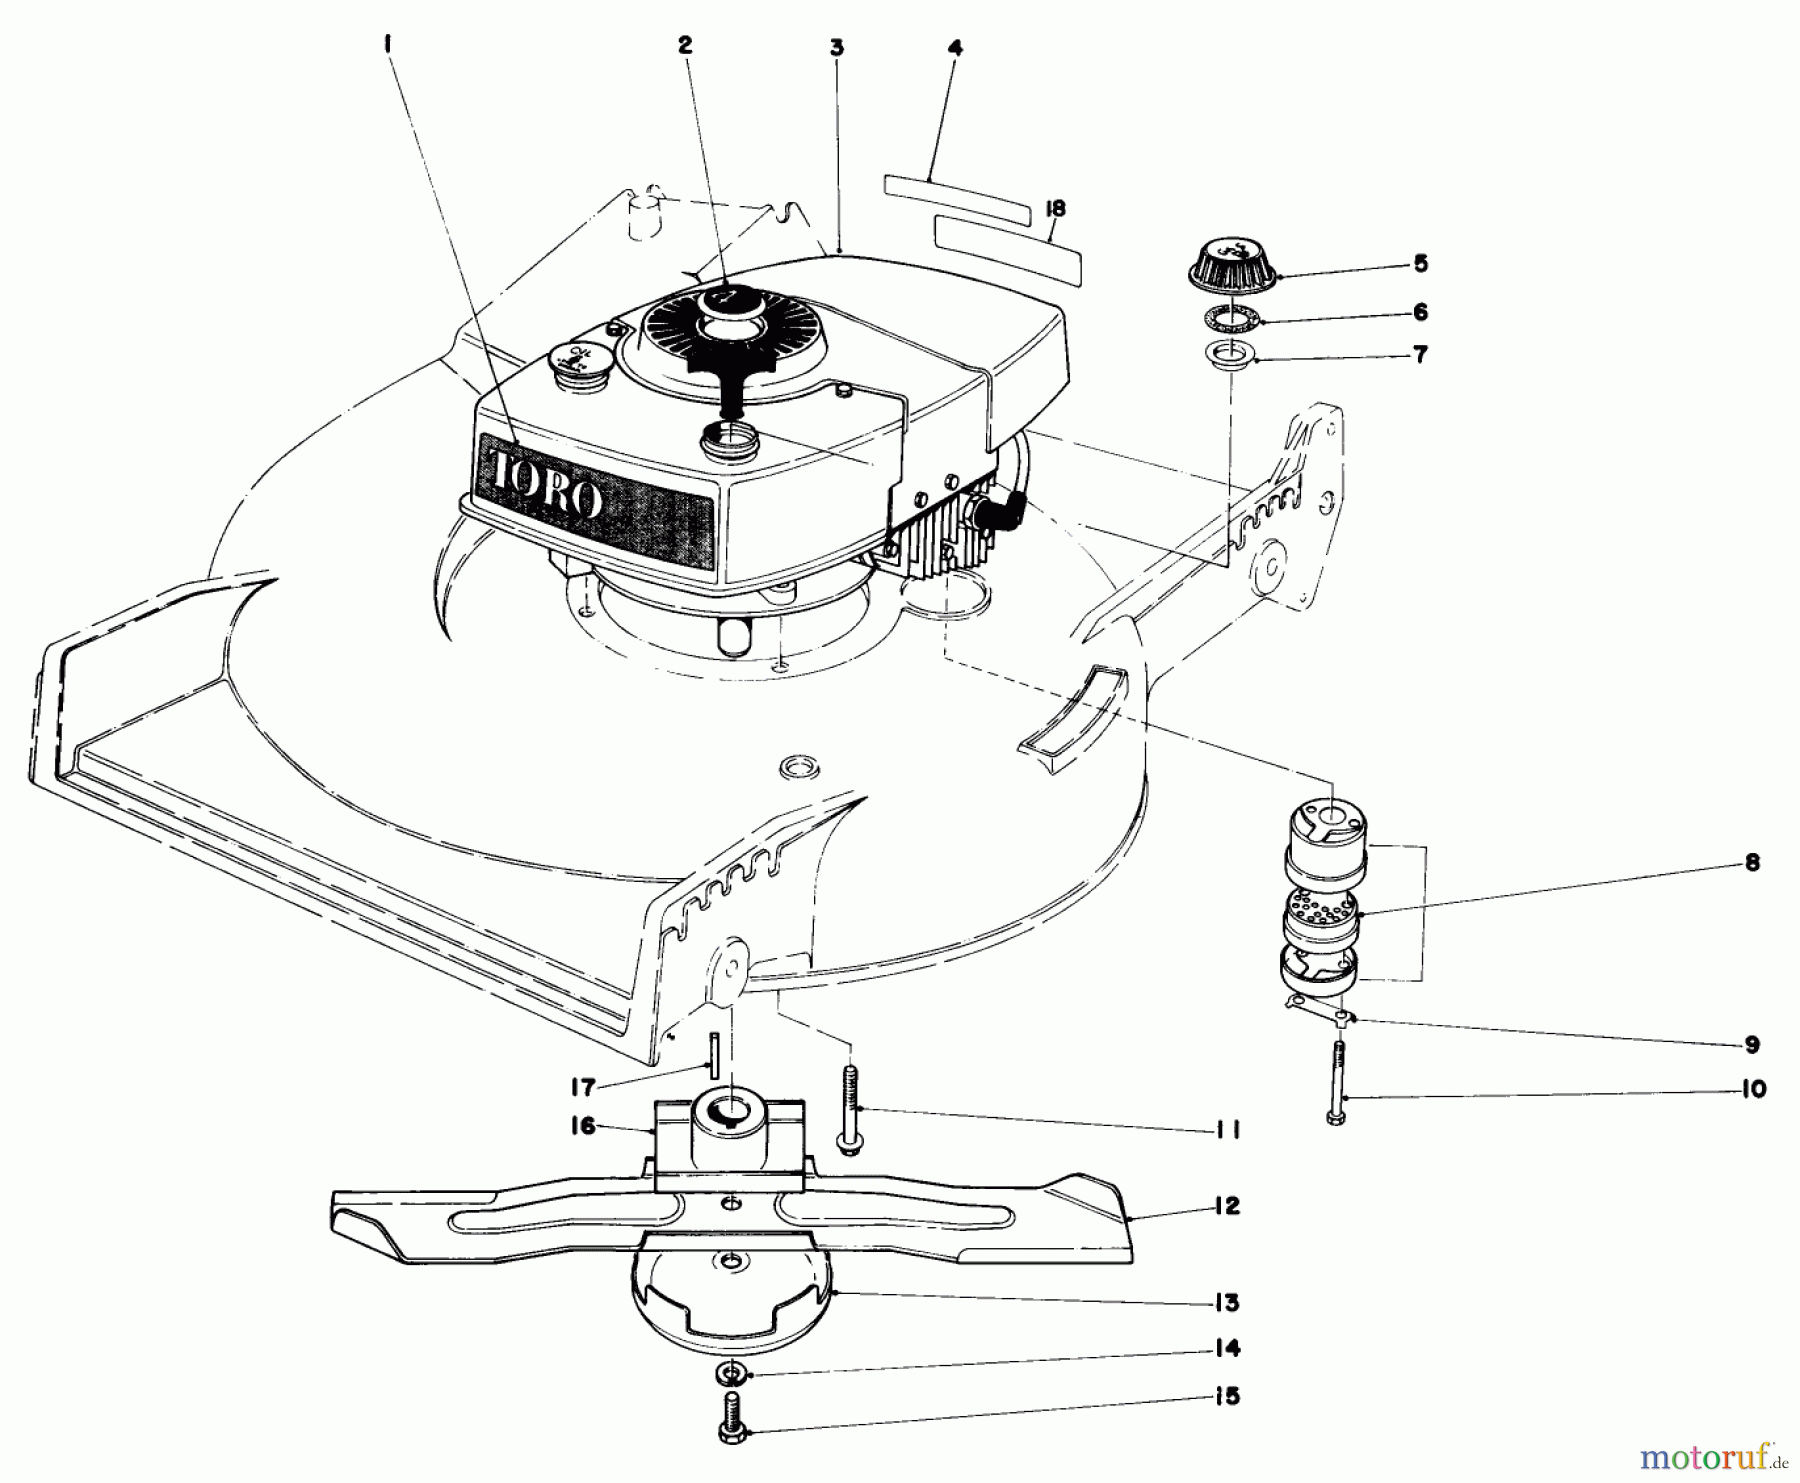  Toro Neu Mowers, Walk-Behind Seite 1 20610 - Toro Lawnmower, 1980 (0000001-0999999) ENGINE ASSEMBLY